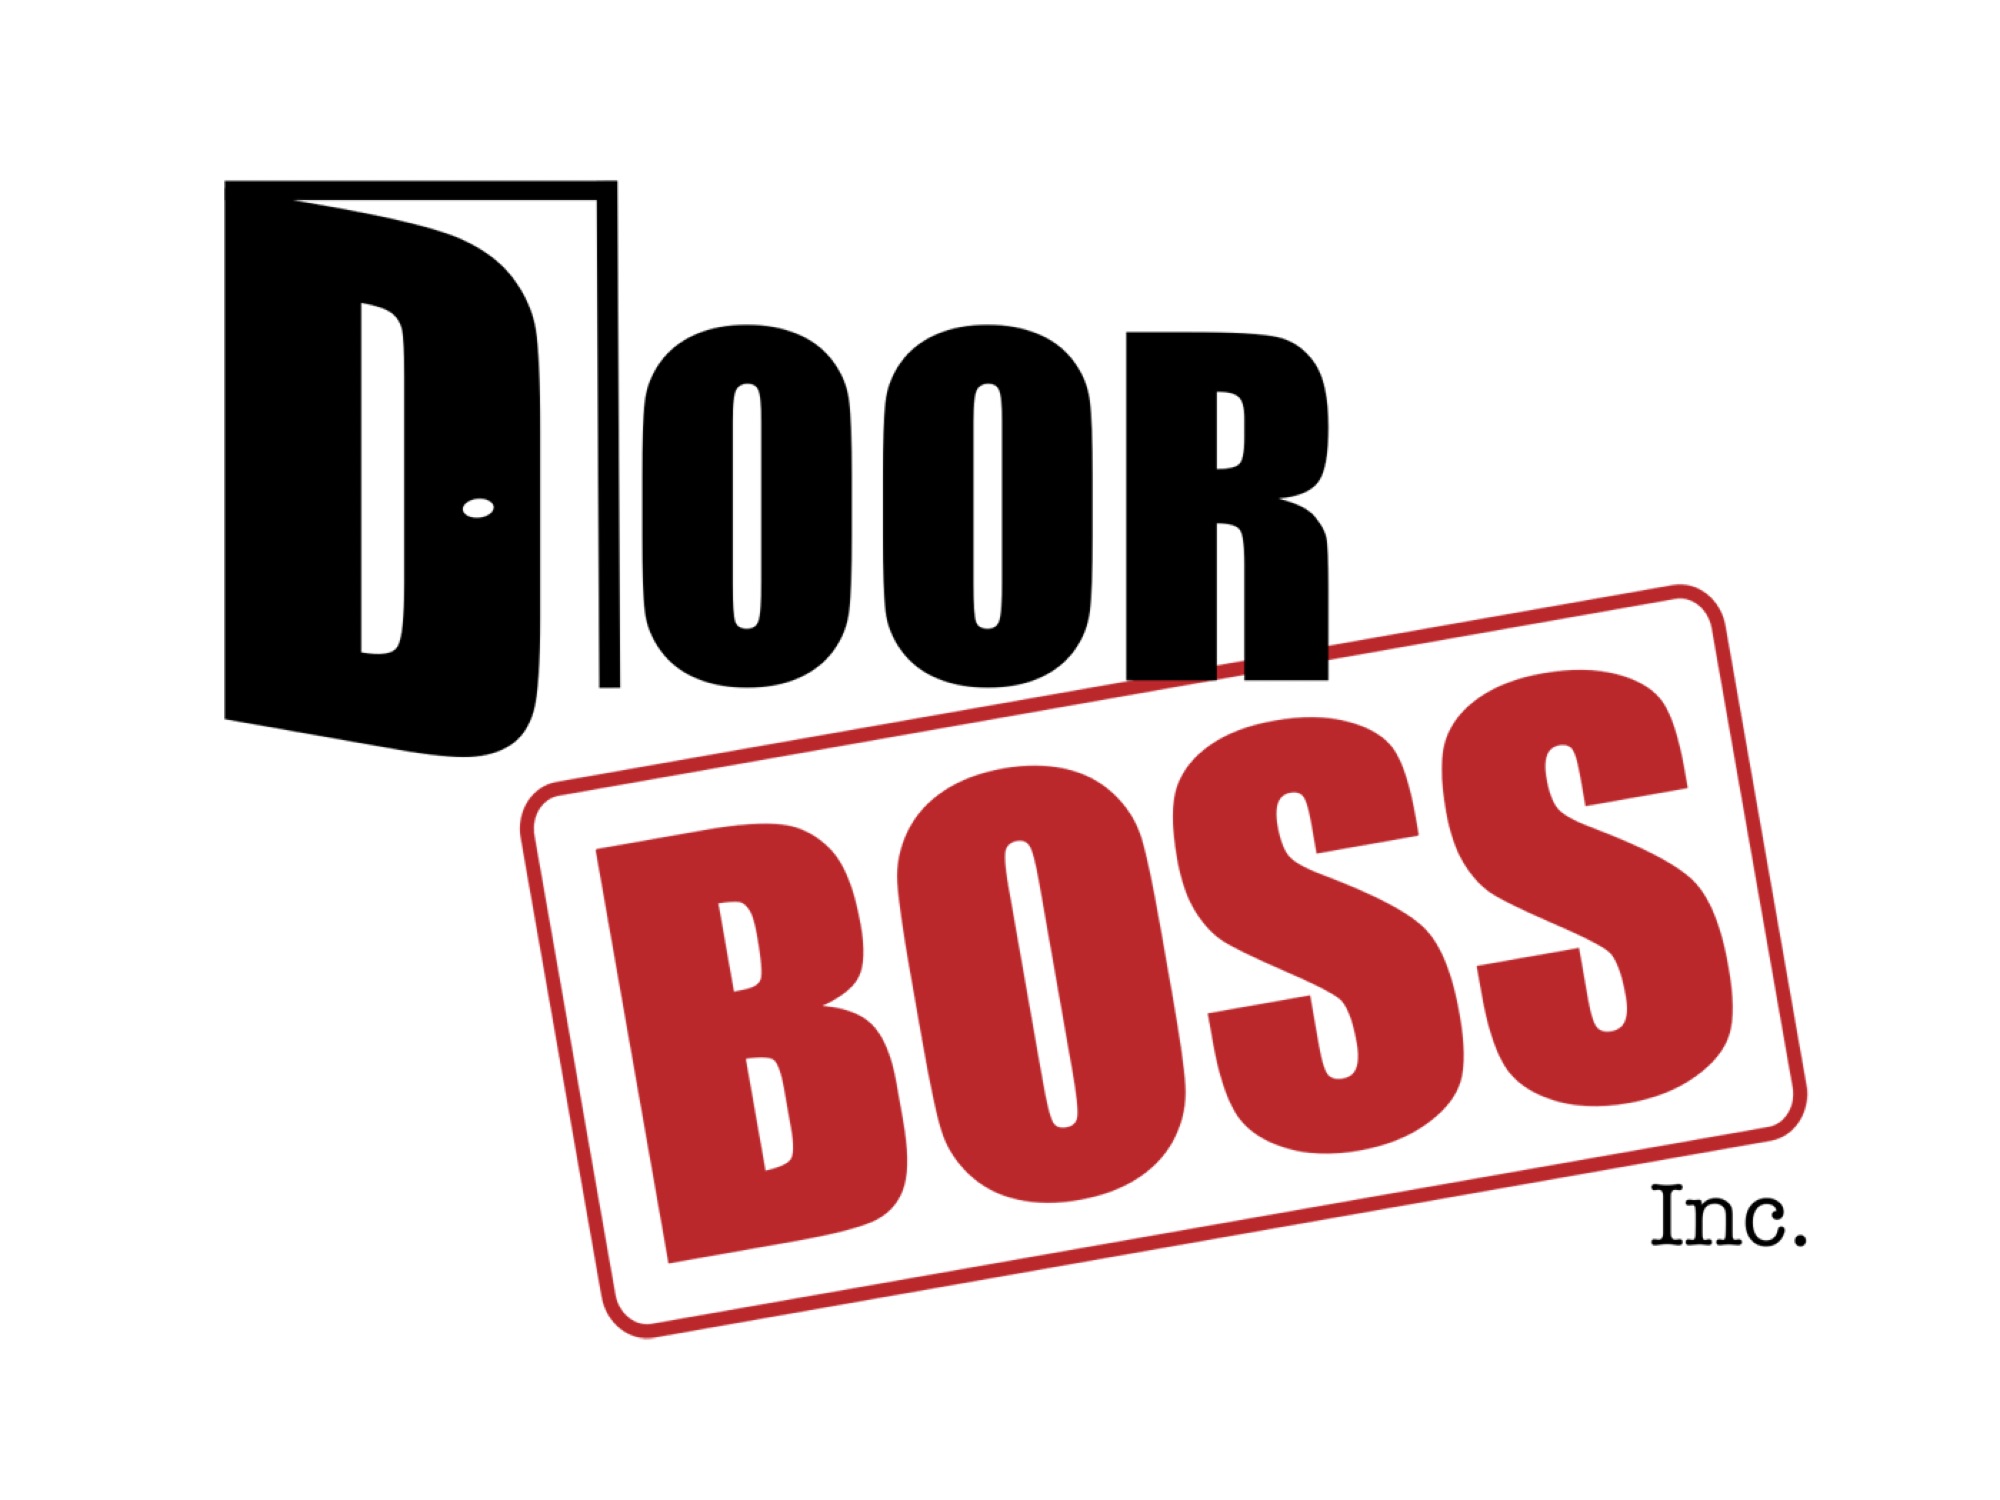 Door Boss, Inc. Logo